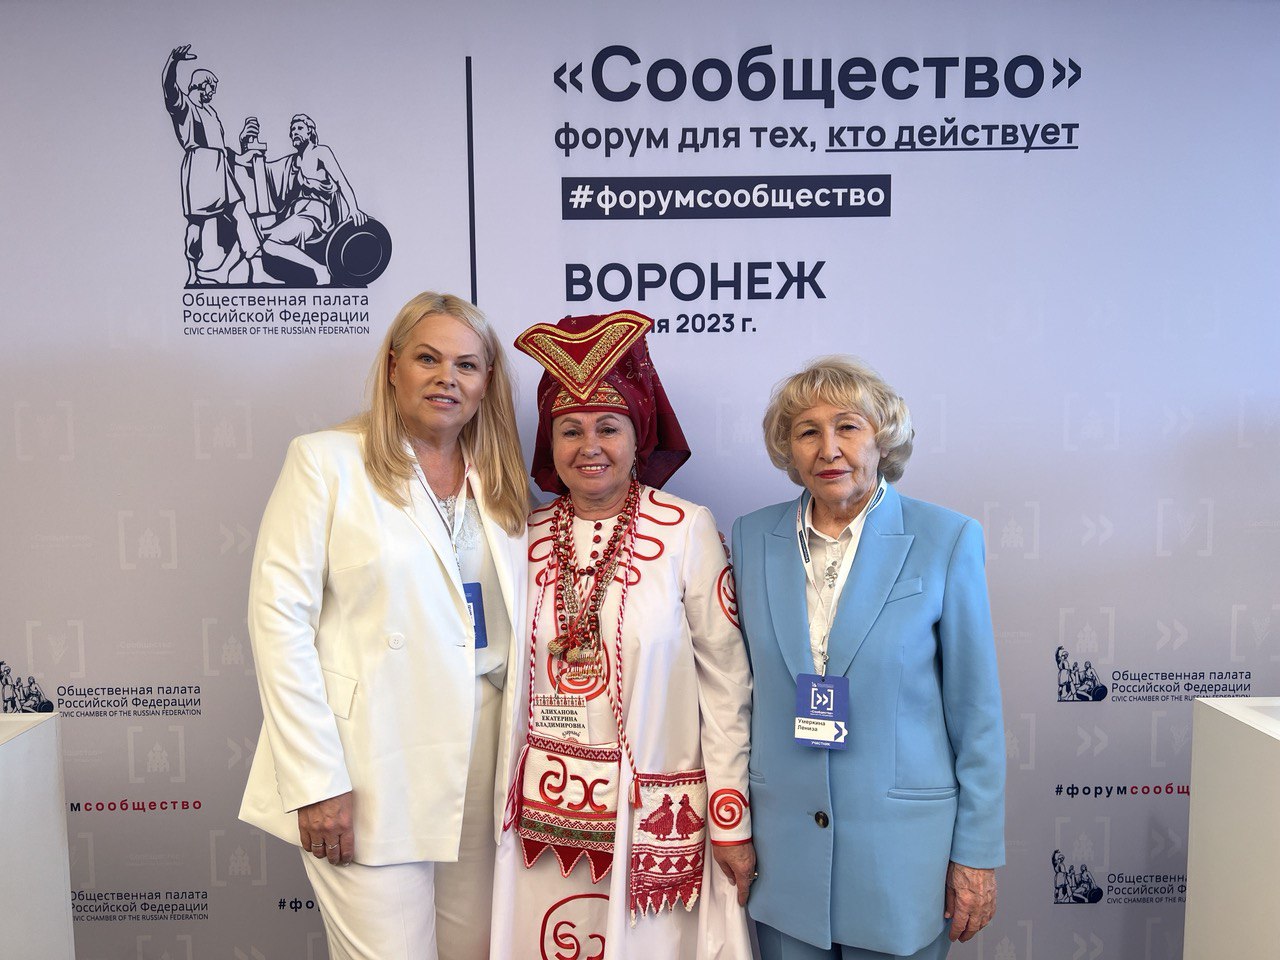 Сегодня в г. Воронеже проходит первый в 2023 году региональный форум «Сообщество».